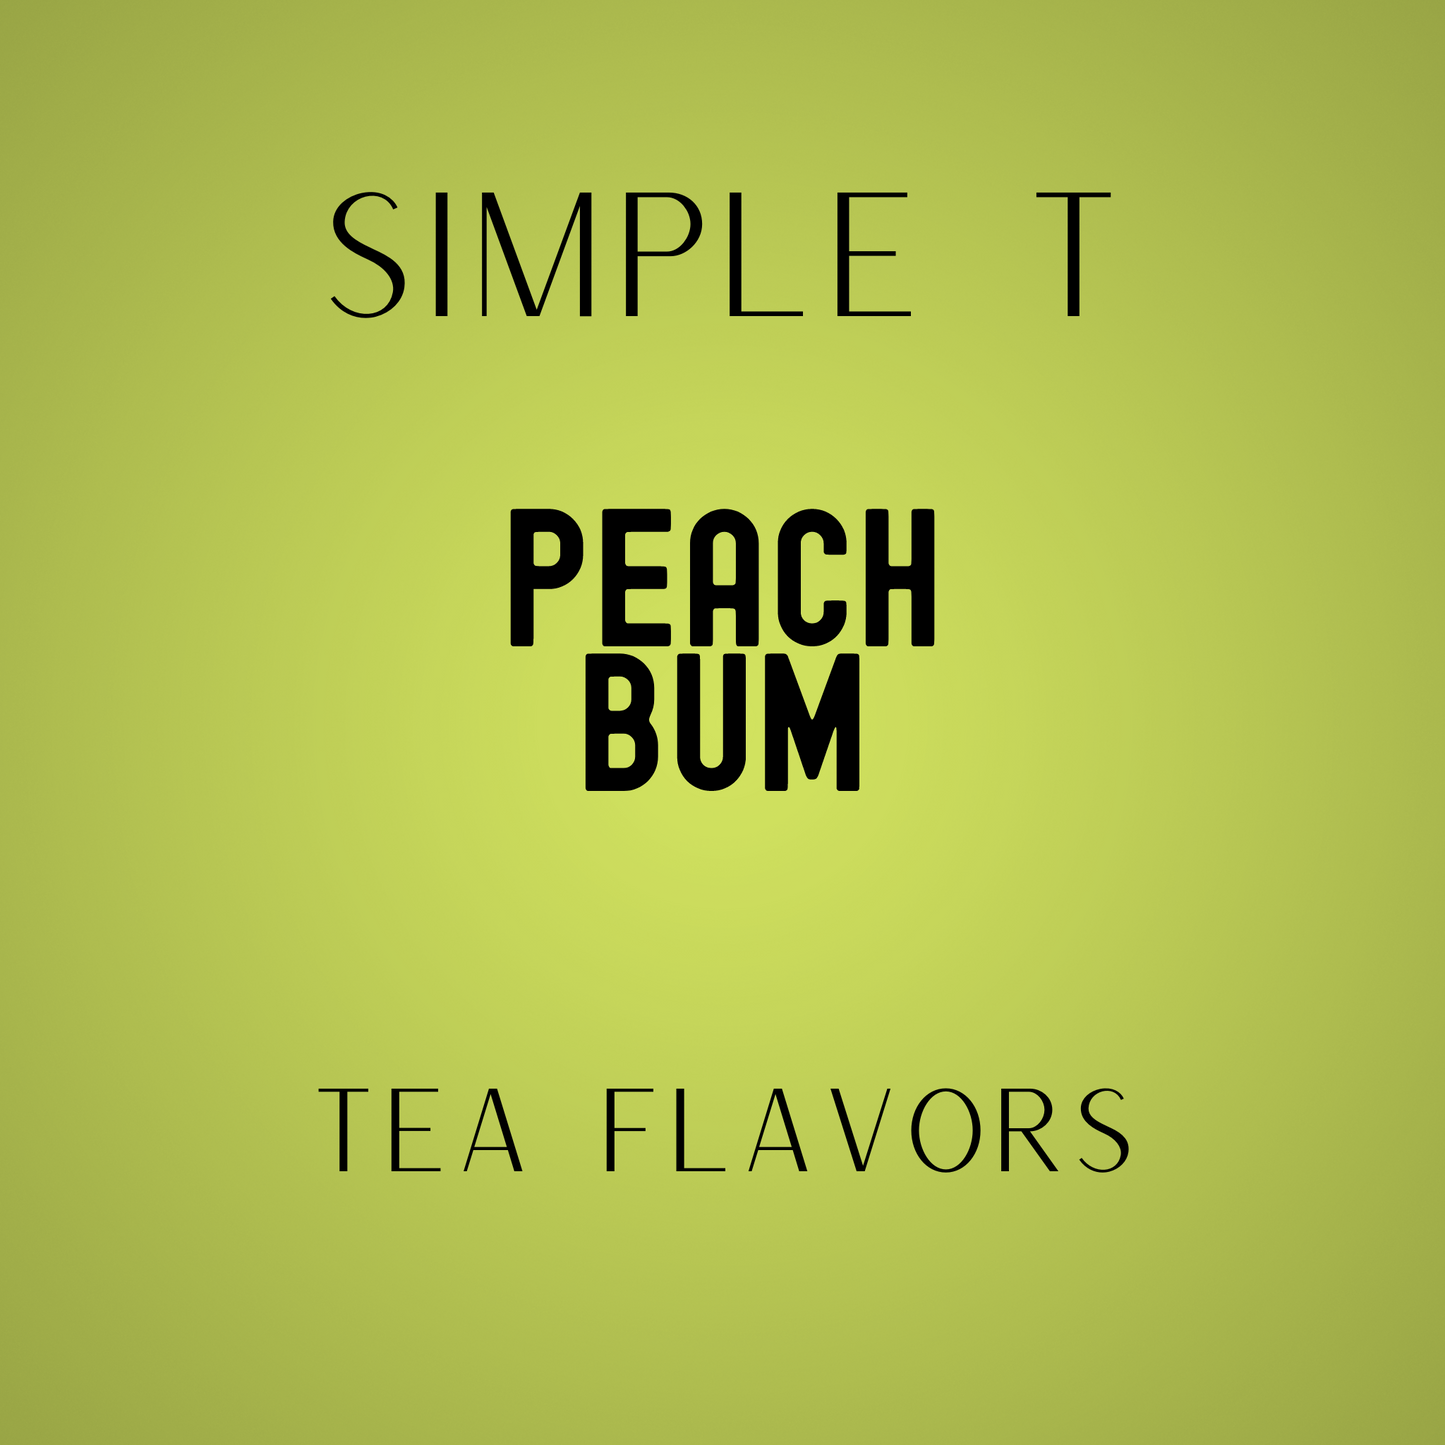 Peach Bum Simply T Packets (Tea Lovers)